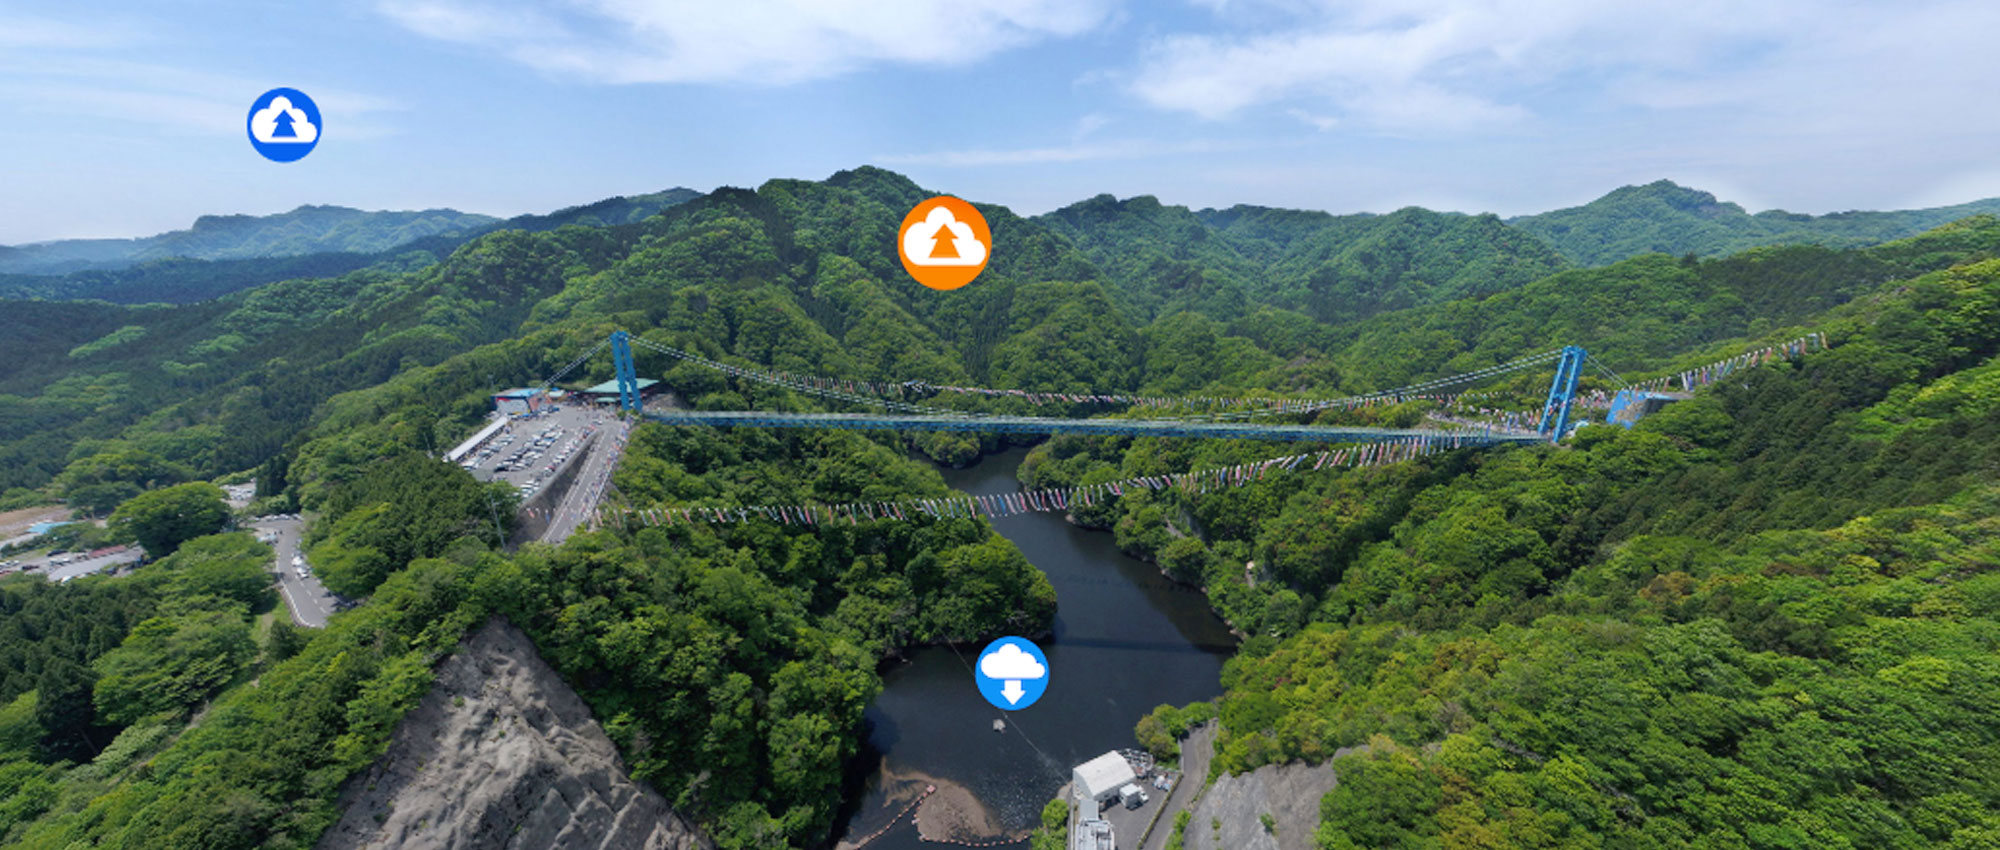 茨城県のおすすめ観光スポット竜神峡・竜神ダム・竜神大橋360°VRツアー